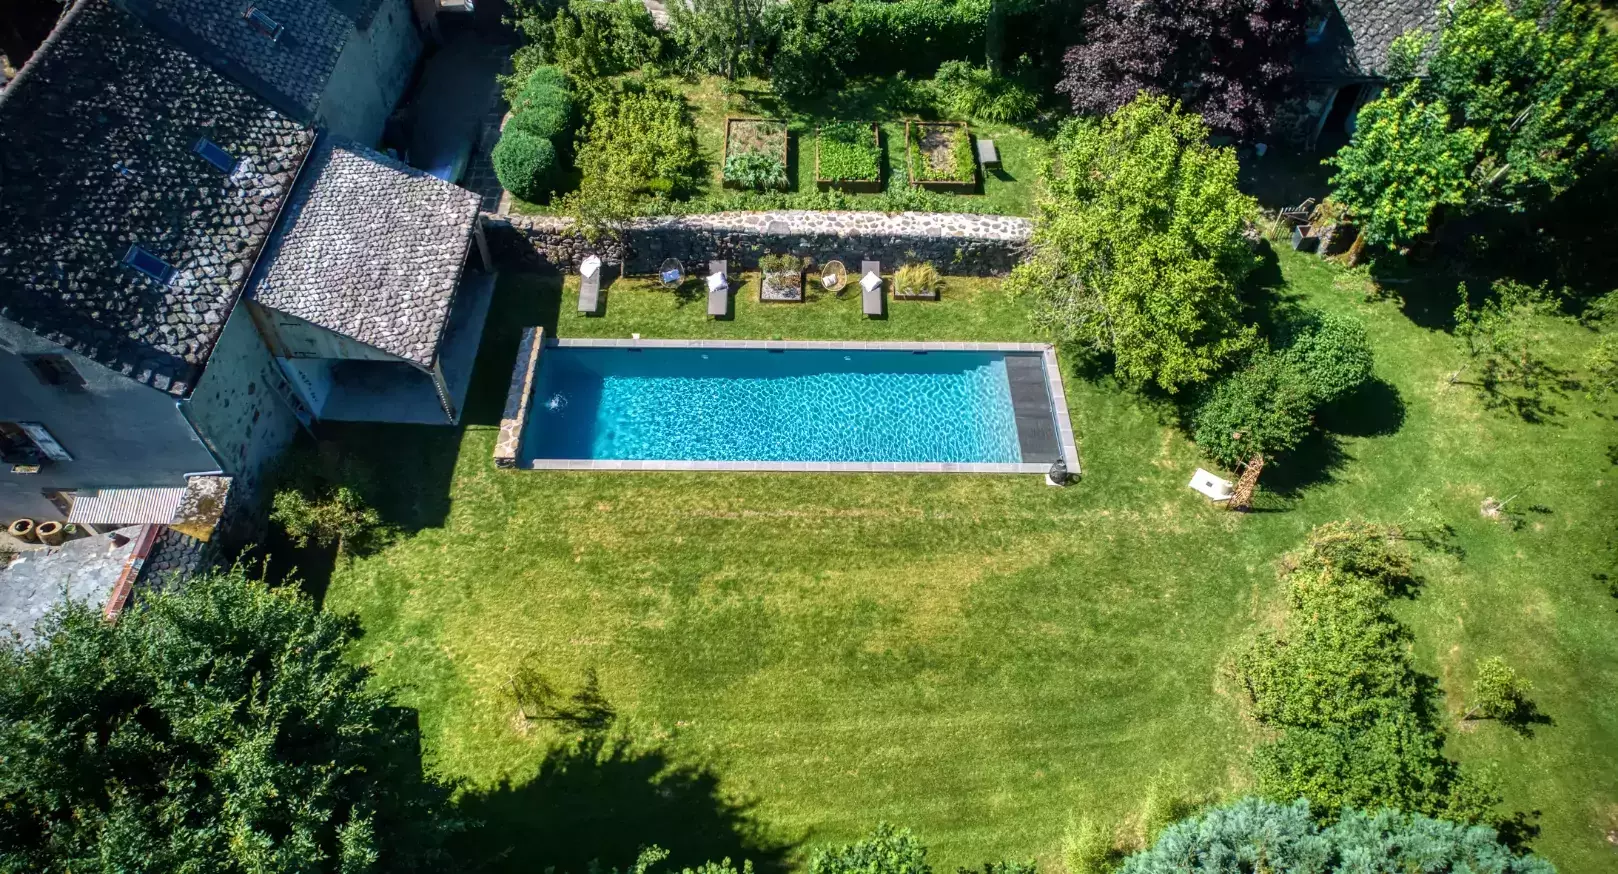 Aménagement d'un bassin de natation linéaire dans un jardin privé, situé dans un village pittoresque de France